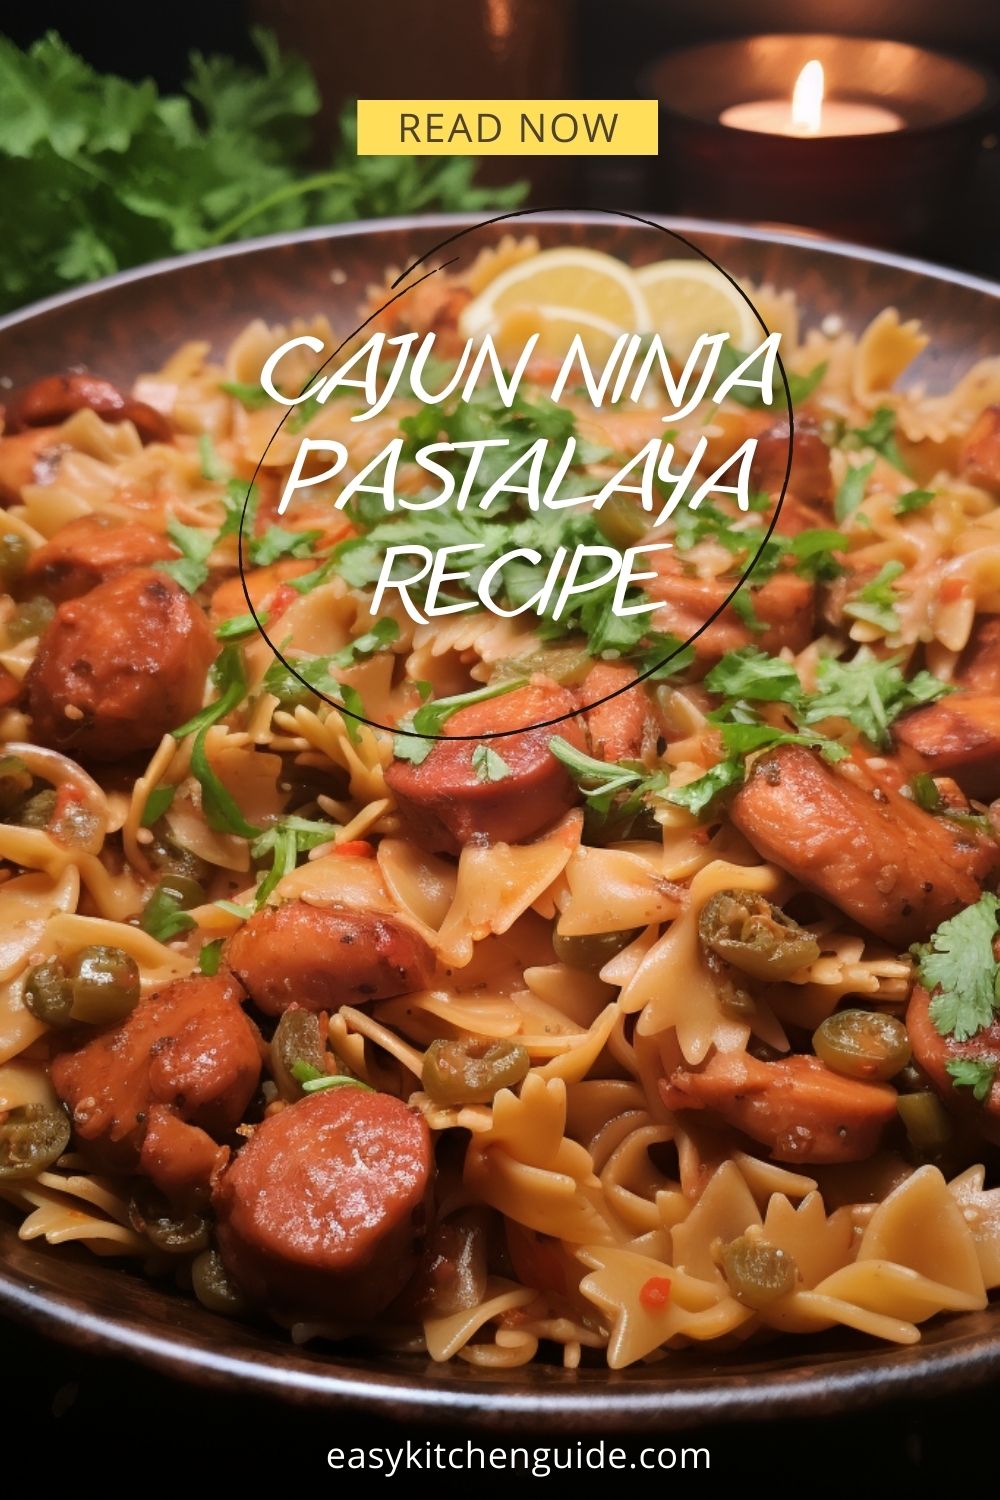 Popular Cajun Ninja Pastalaya Magic recipe